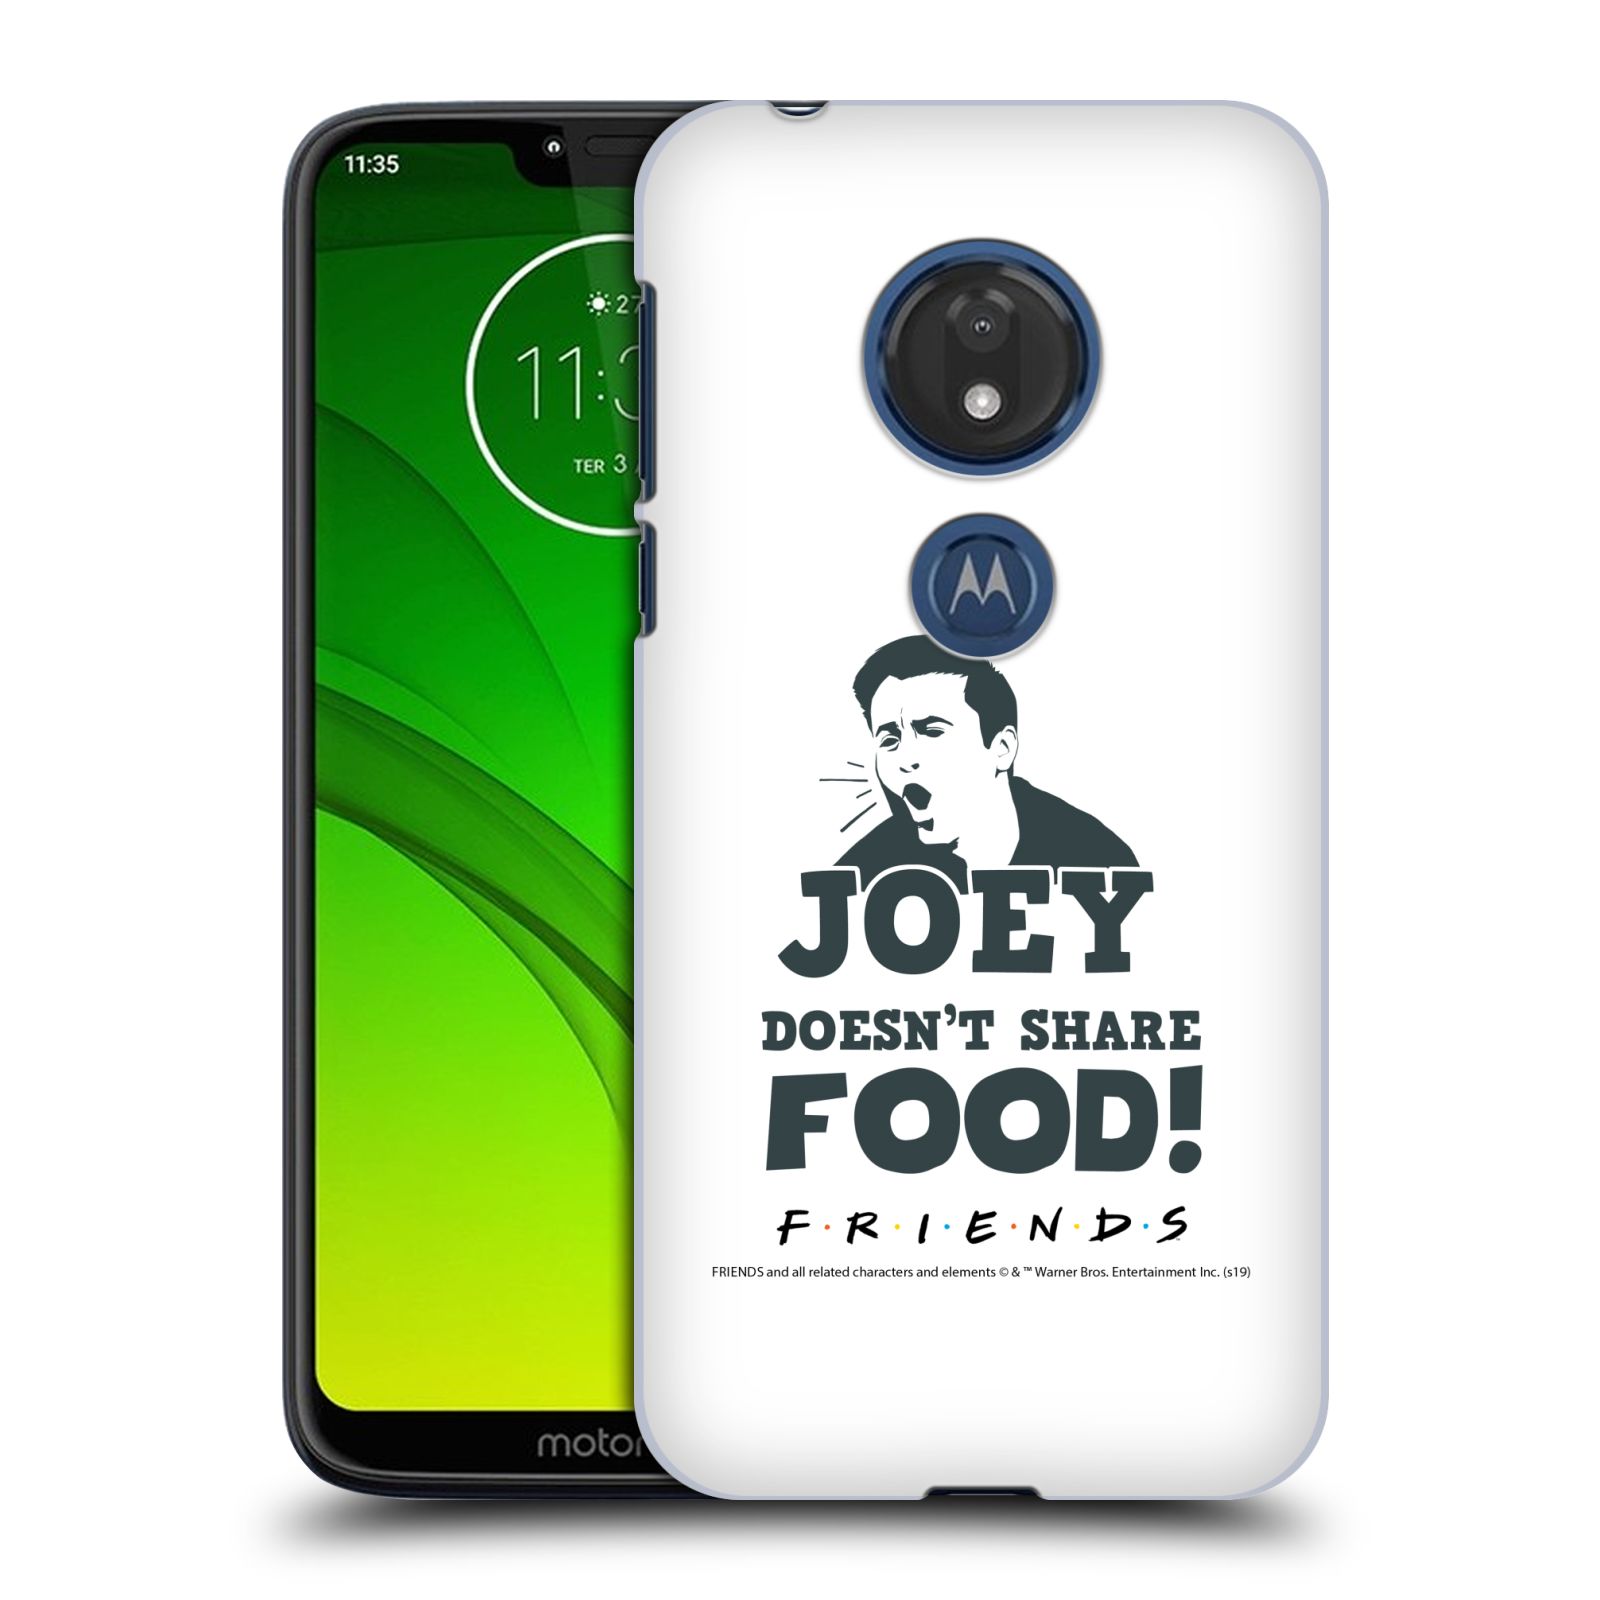 Pouzdro na mobil Motorola Moto G7 Play - HEAD CASE - Seriál Přátelé - Joey se o jídlo nedělí